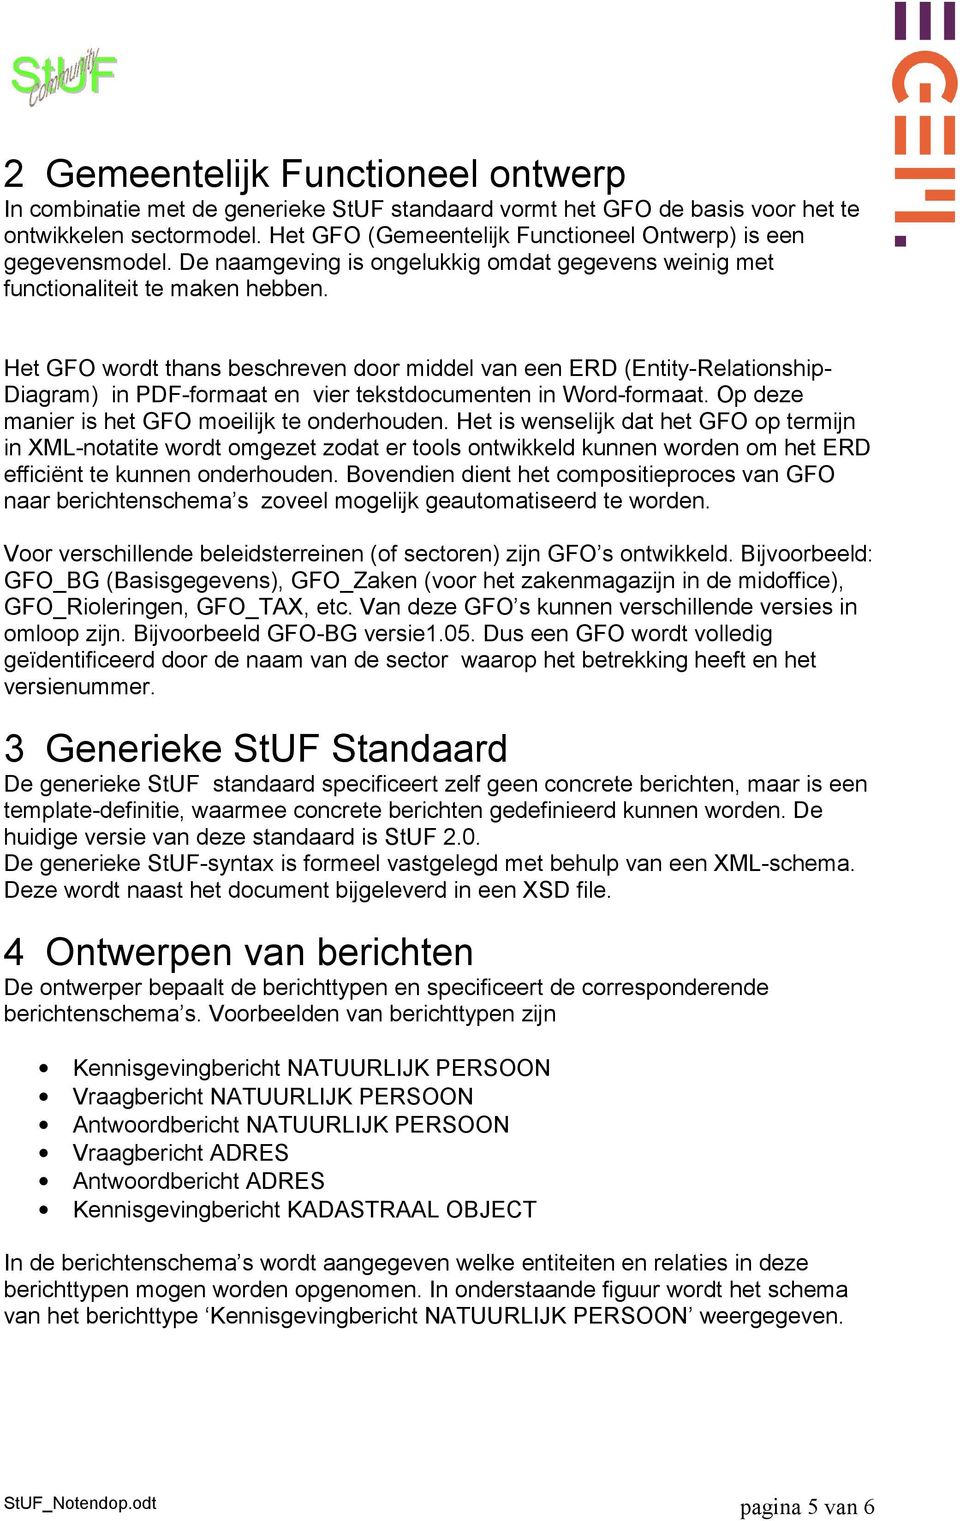 Het GFO wordt thans beschreven door middel van een ERD (Entity-Relationship- Diagram) in PDF-formaat en vier tekstdocumenten in Word-formaat. Op deze manier is het GFO moeilijk te onderhouden.